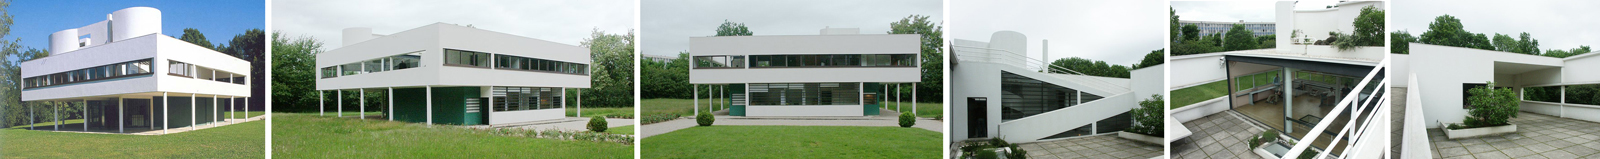 villa Savoye architecture